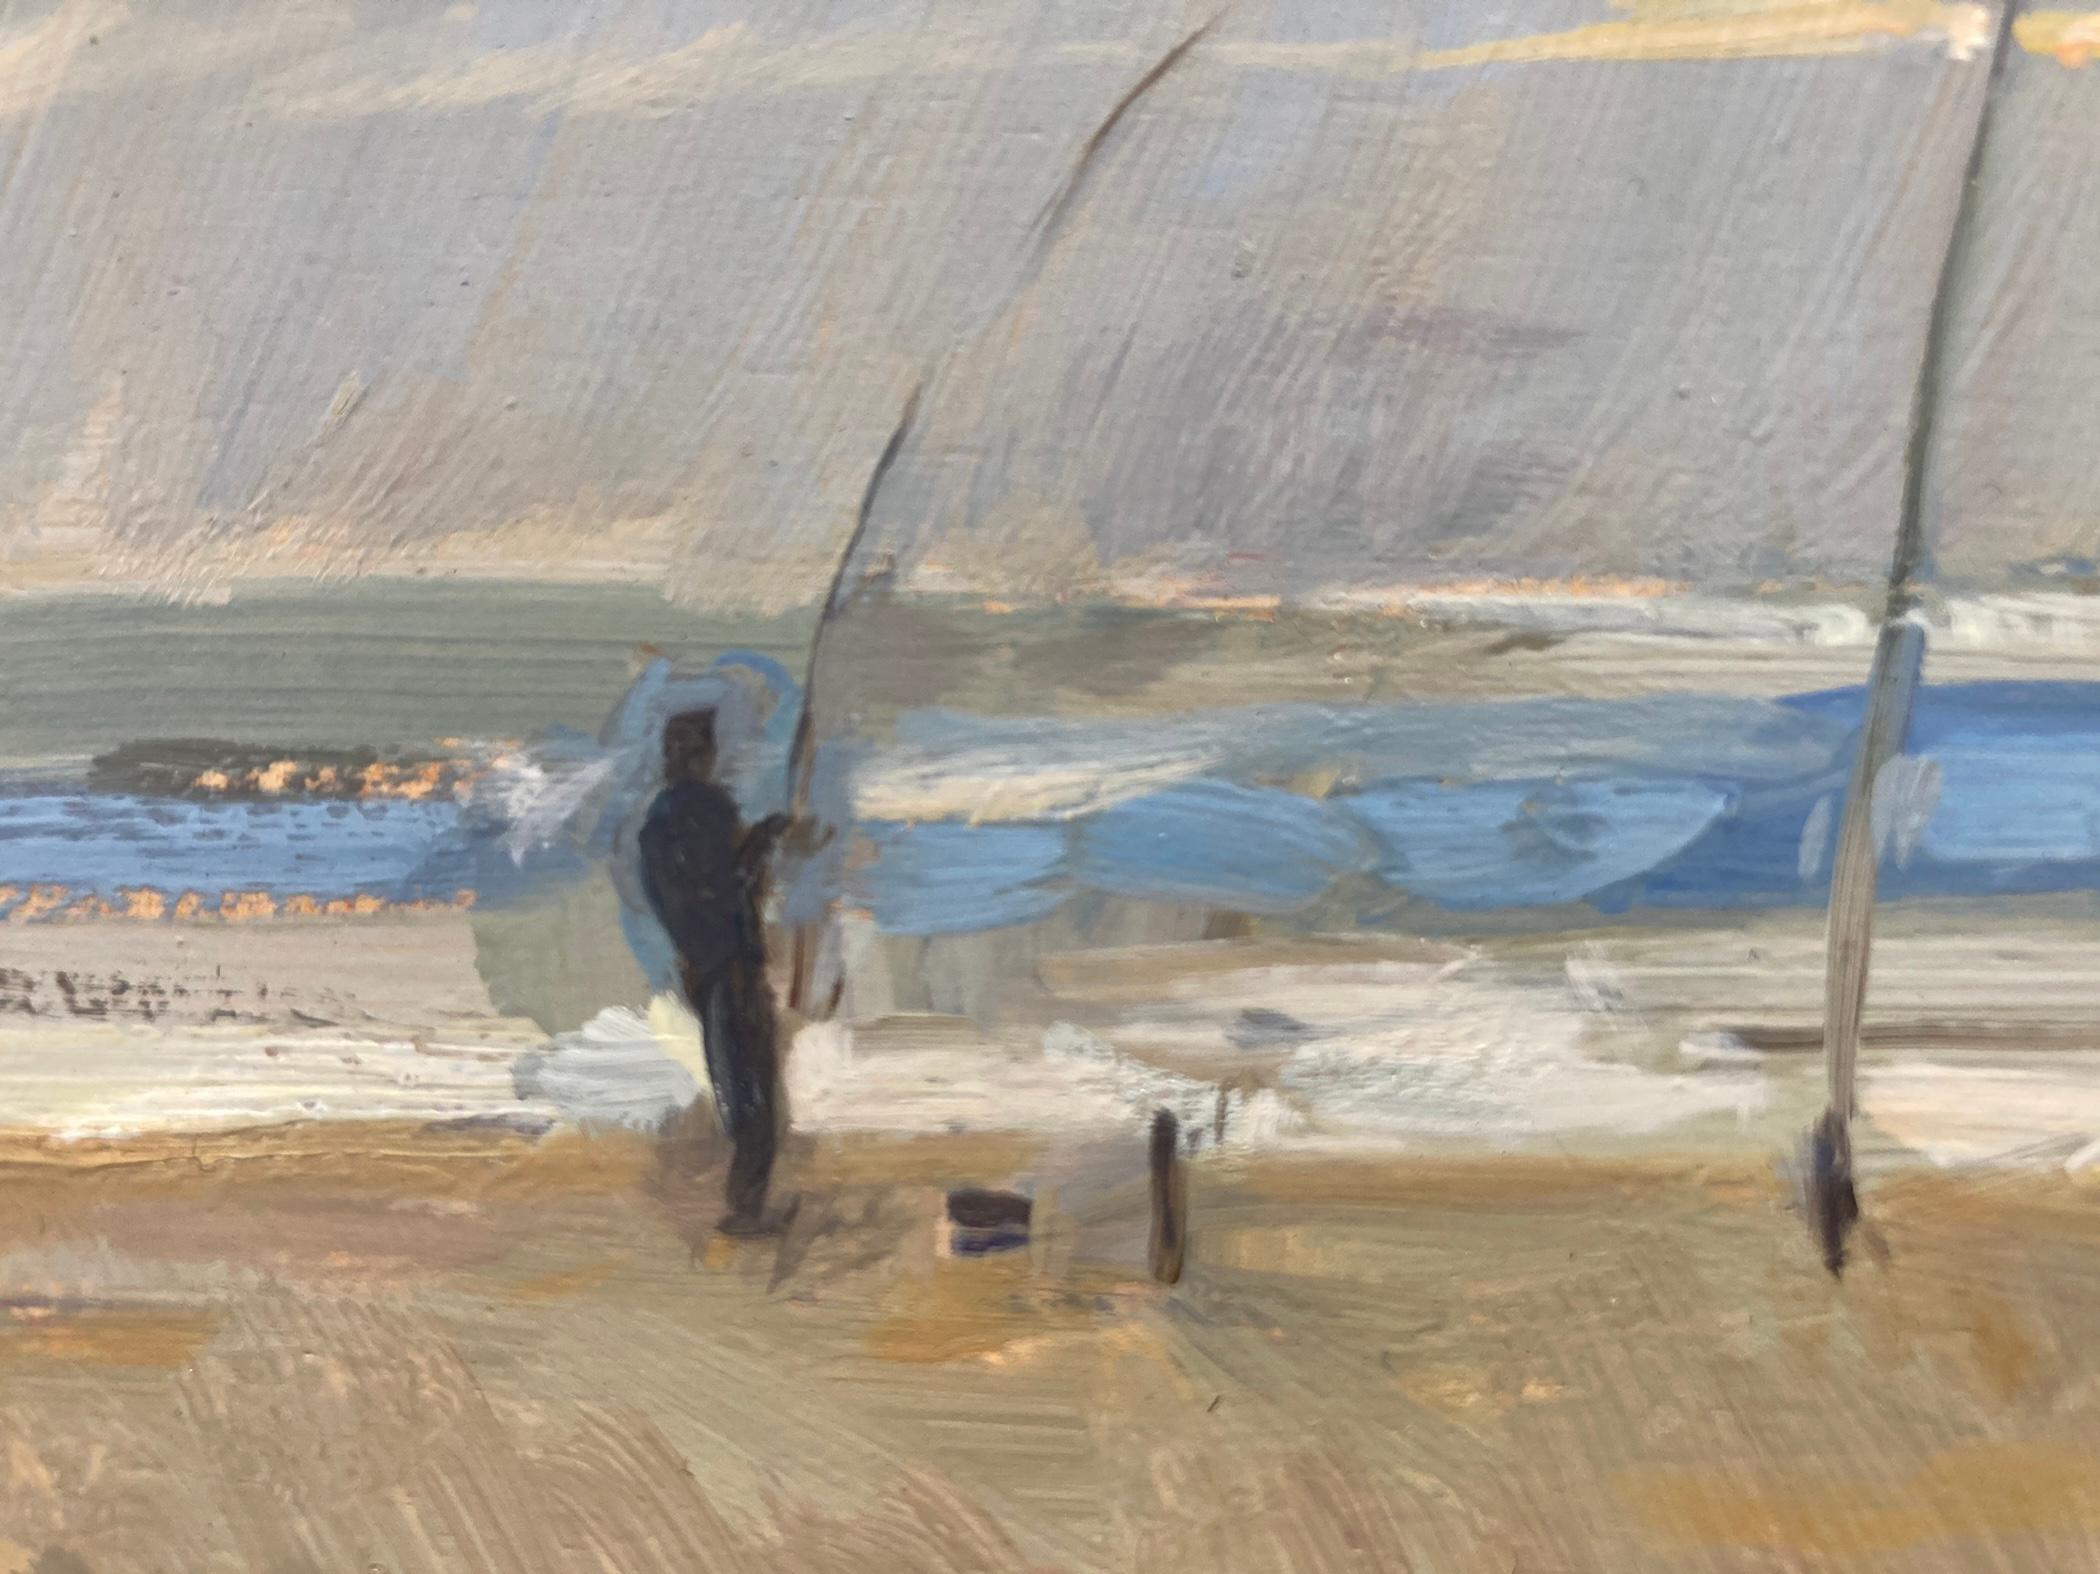 Ein Pleinair-Gemälde eines Fischers, der am Strand einen Fisch an Land zieht. Die Angelruten sind am Strand aufgestellt und warten noch auf einen Schlepper. Die Komposition besteht aus weichen Pastellfarben, mit Ausnahme des Fischers in Braun und